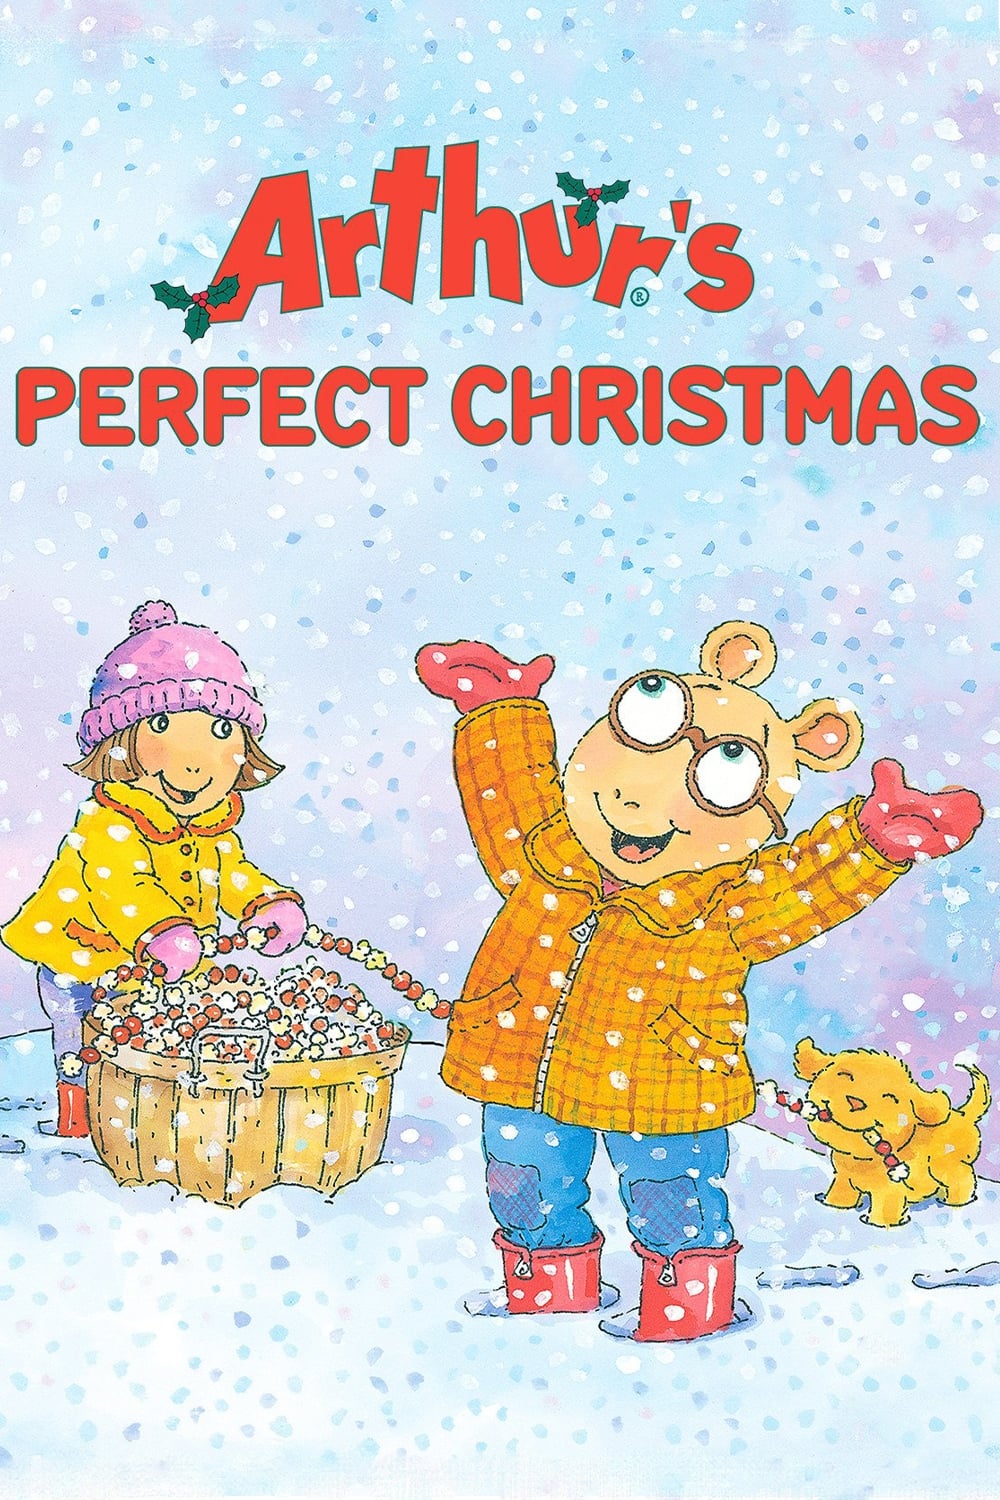 Arthur's Perfect Christmas (2000)